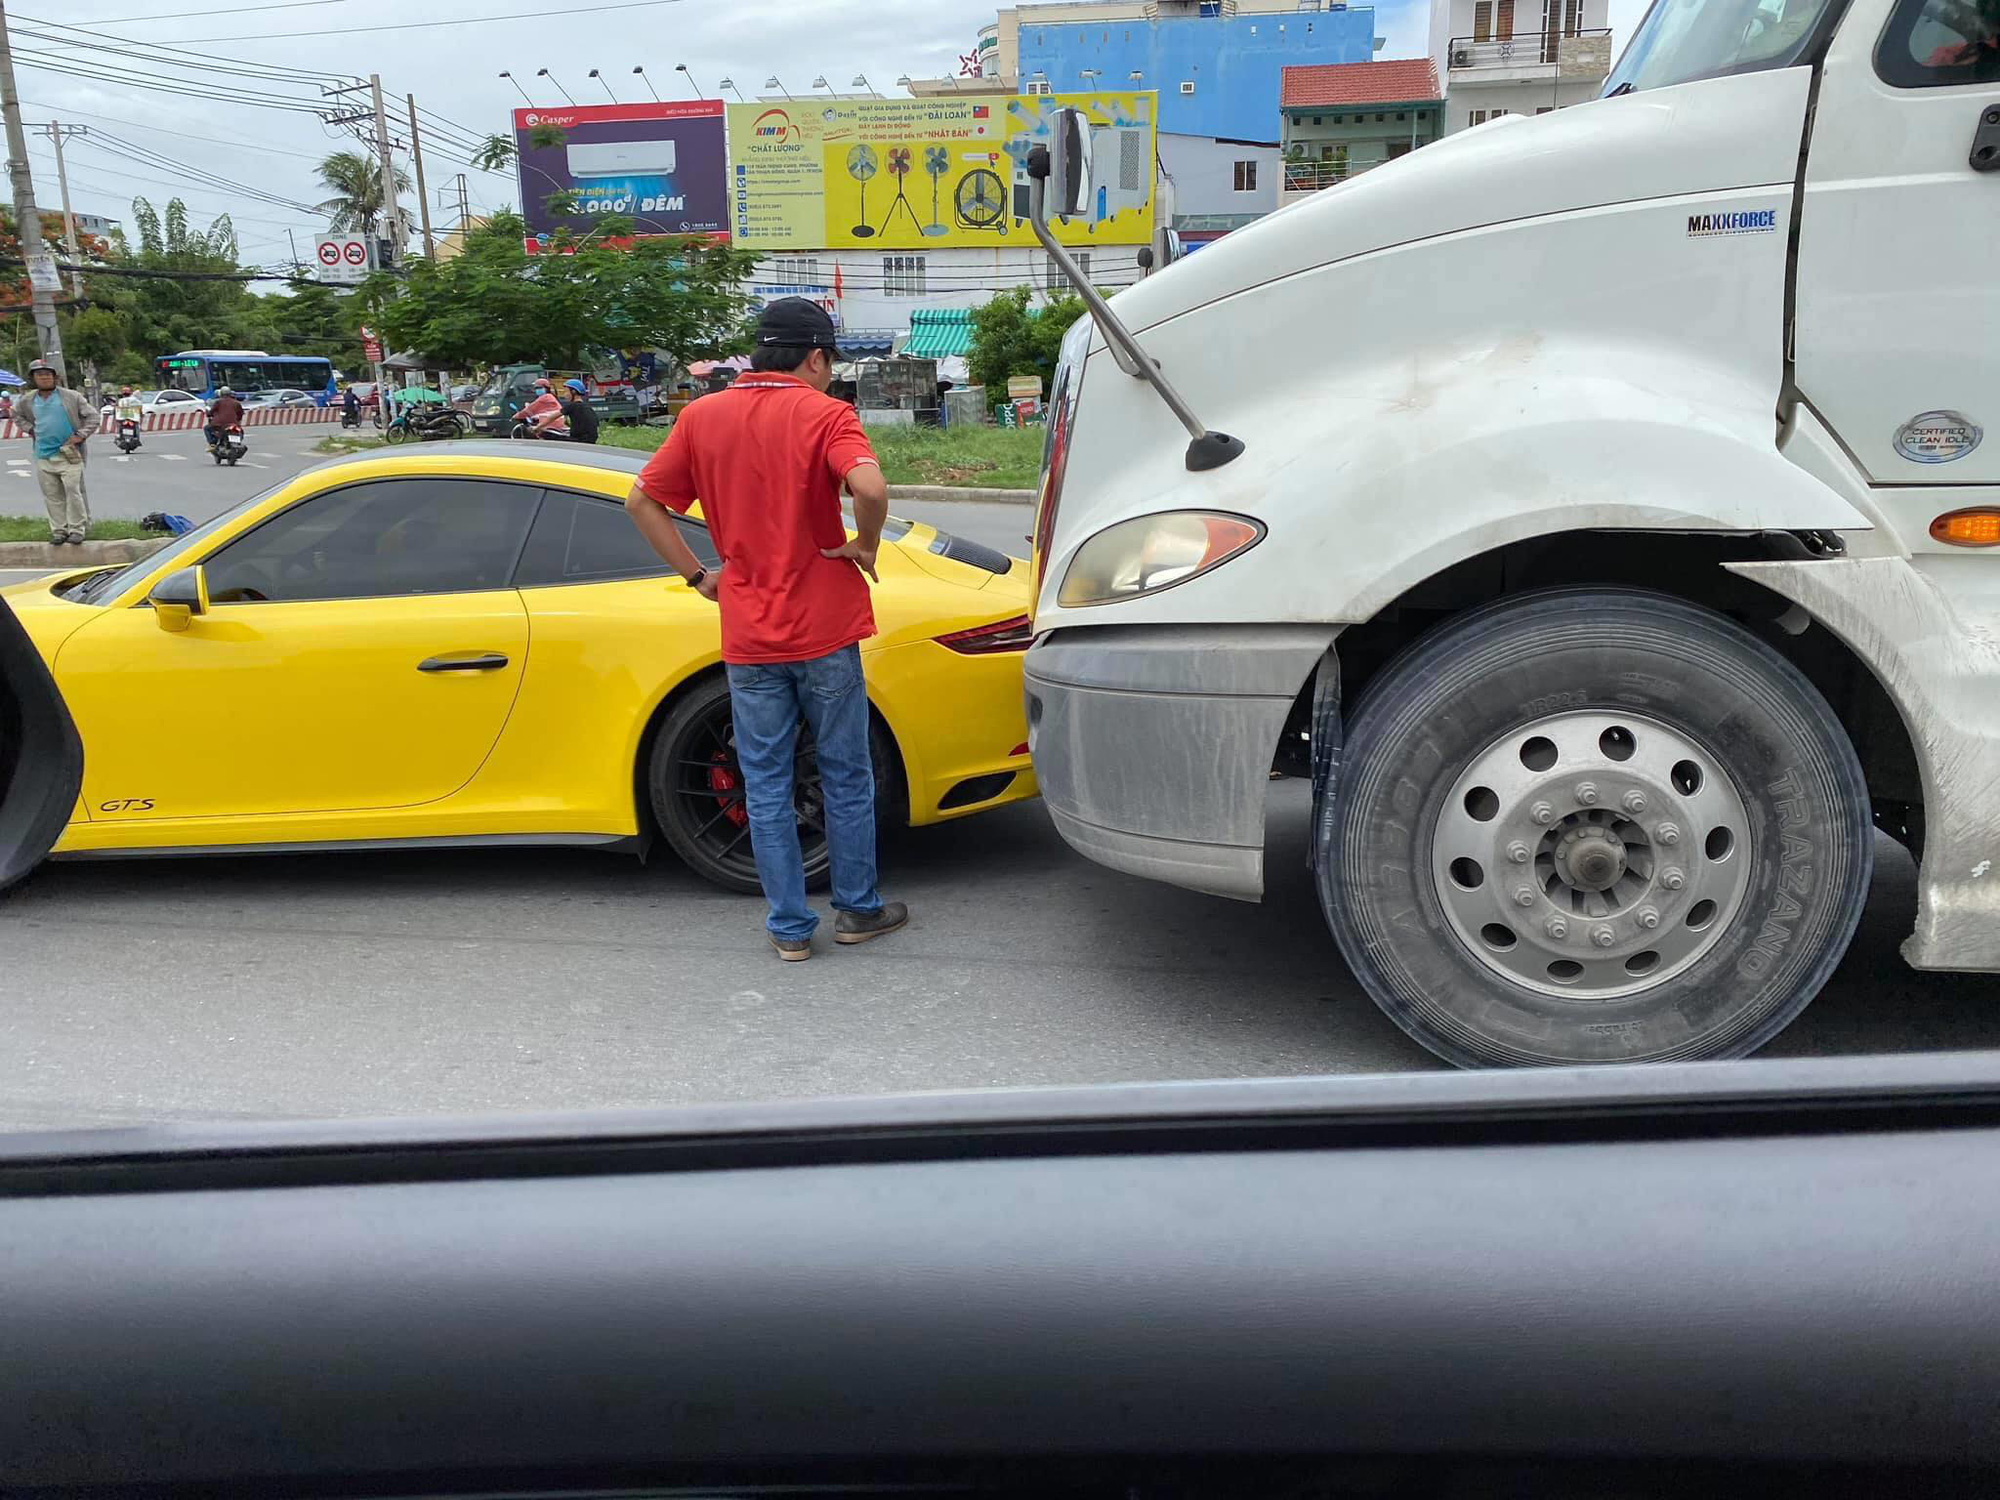 Hàng hiếm Porsche 911 Carrera GTS giá gần 8 tỷ đồng màu vàng va chạm với container tại Sài Gòn - Ảnh 2.